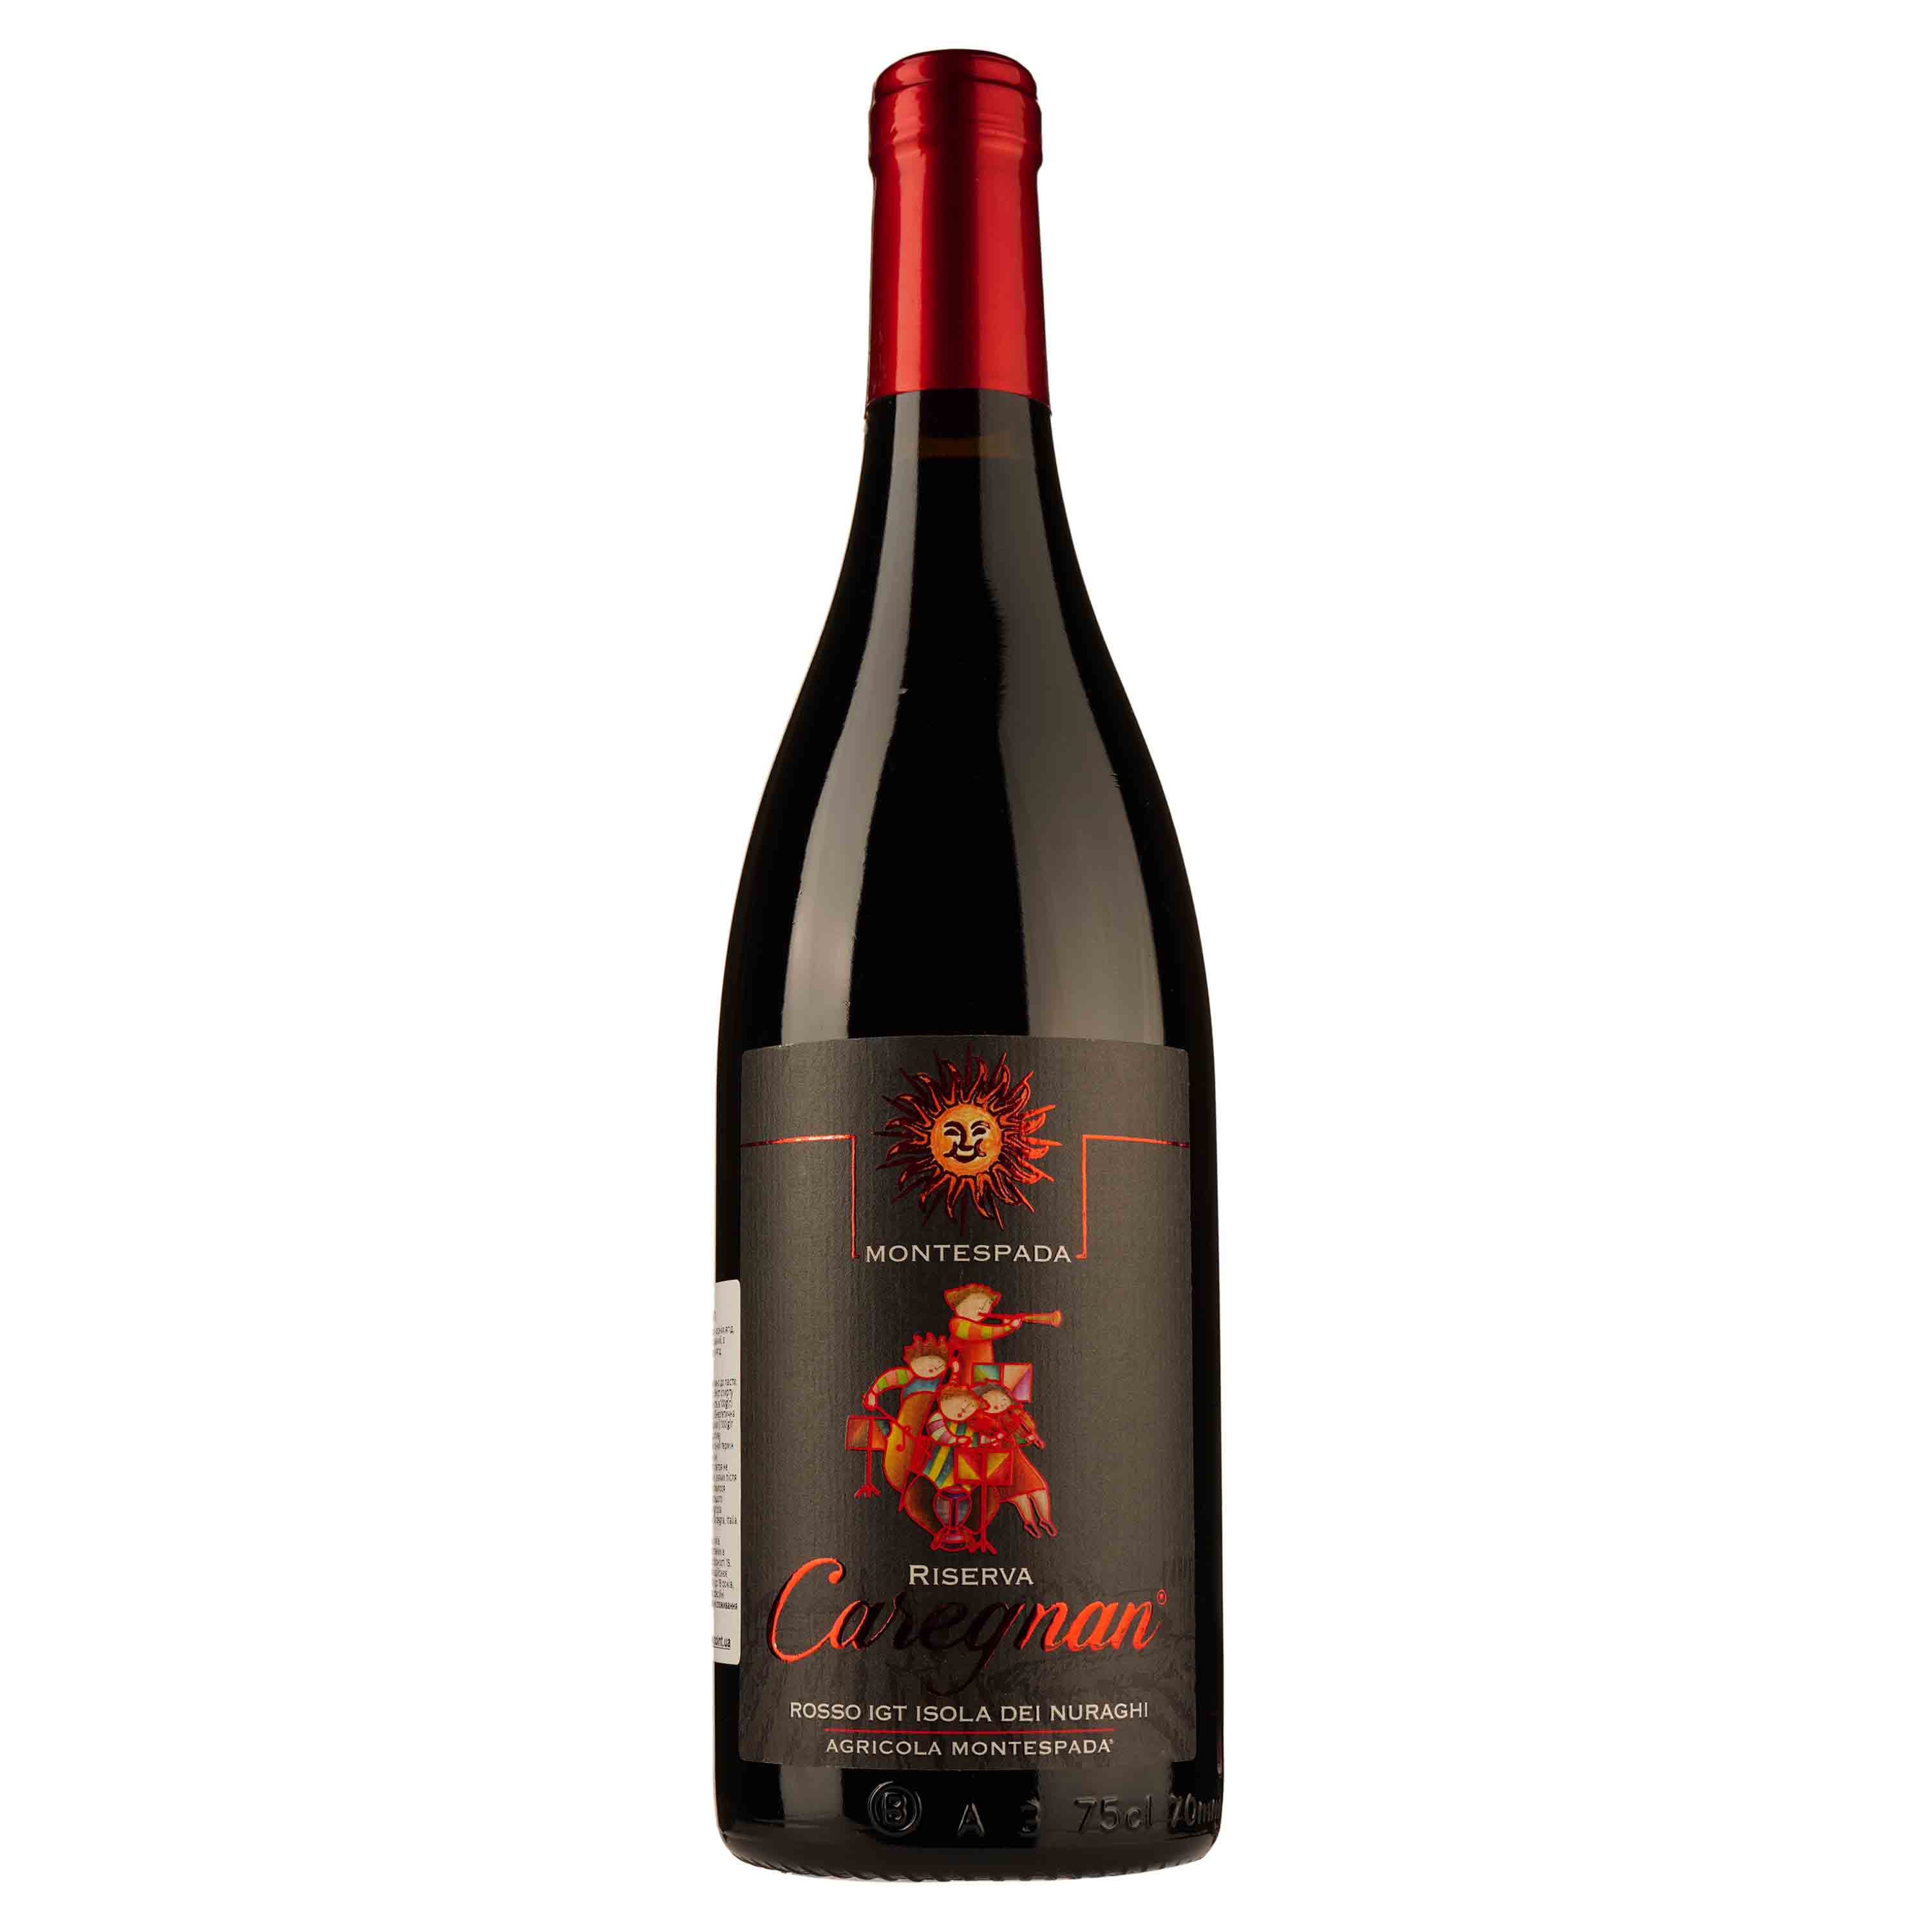 Вино Montespada Caregnan Reserve IGT 2016, красное, сухое, 14,5%, 0,75 л - фото 1